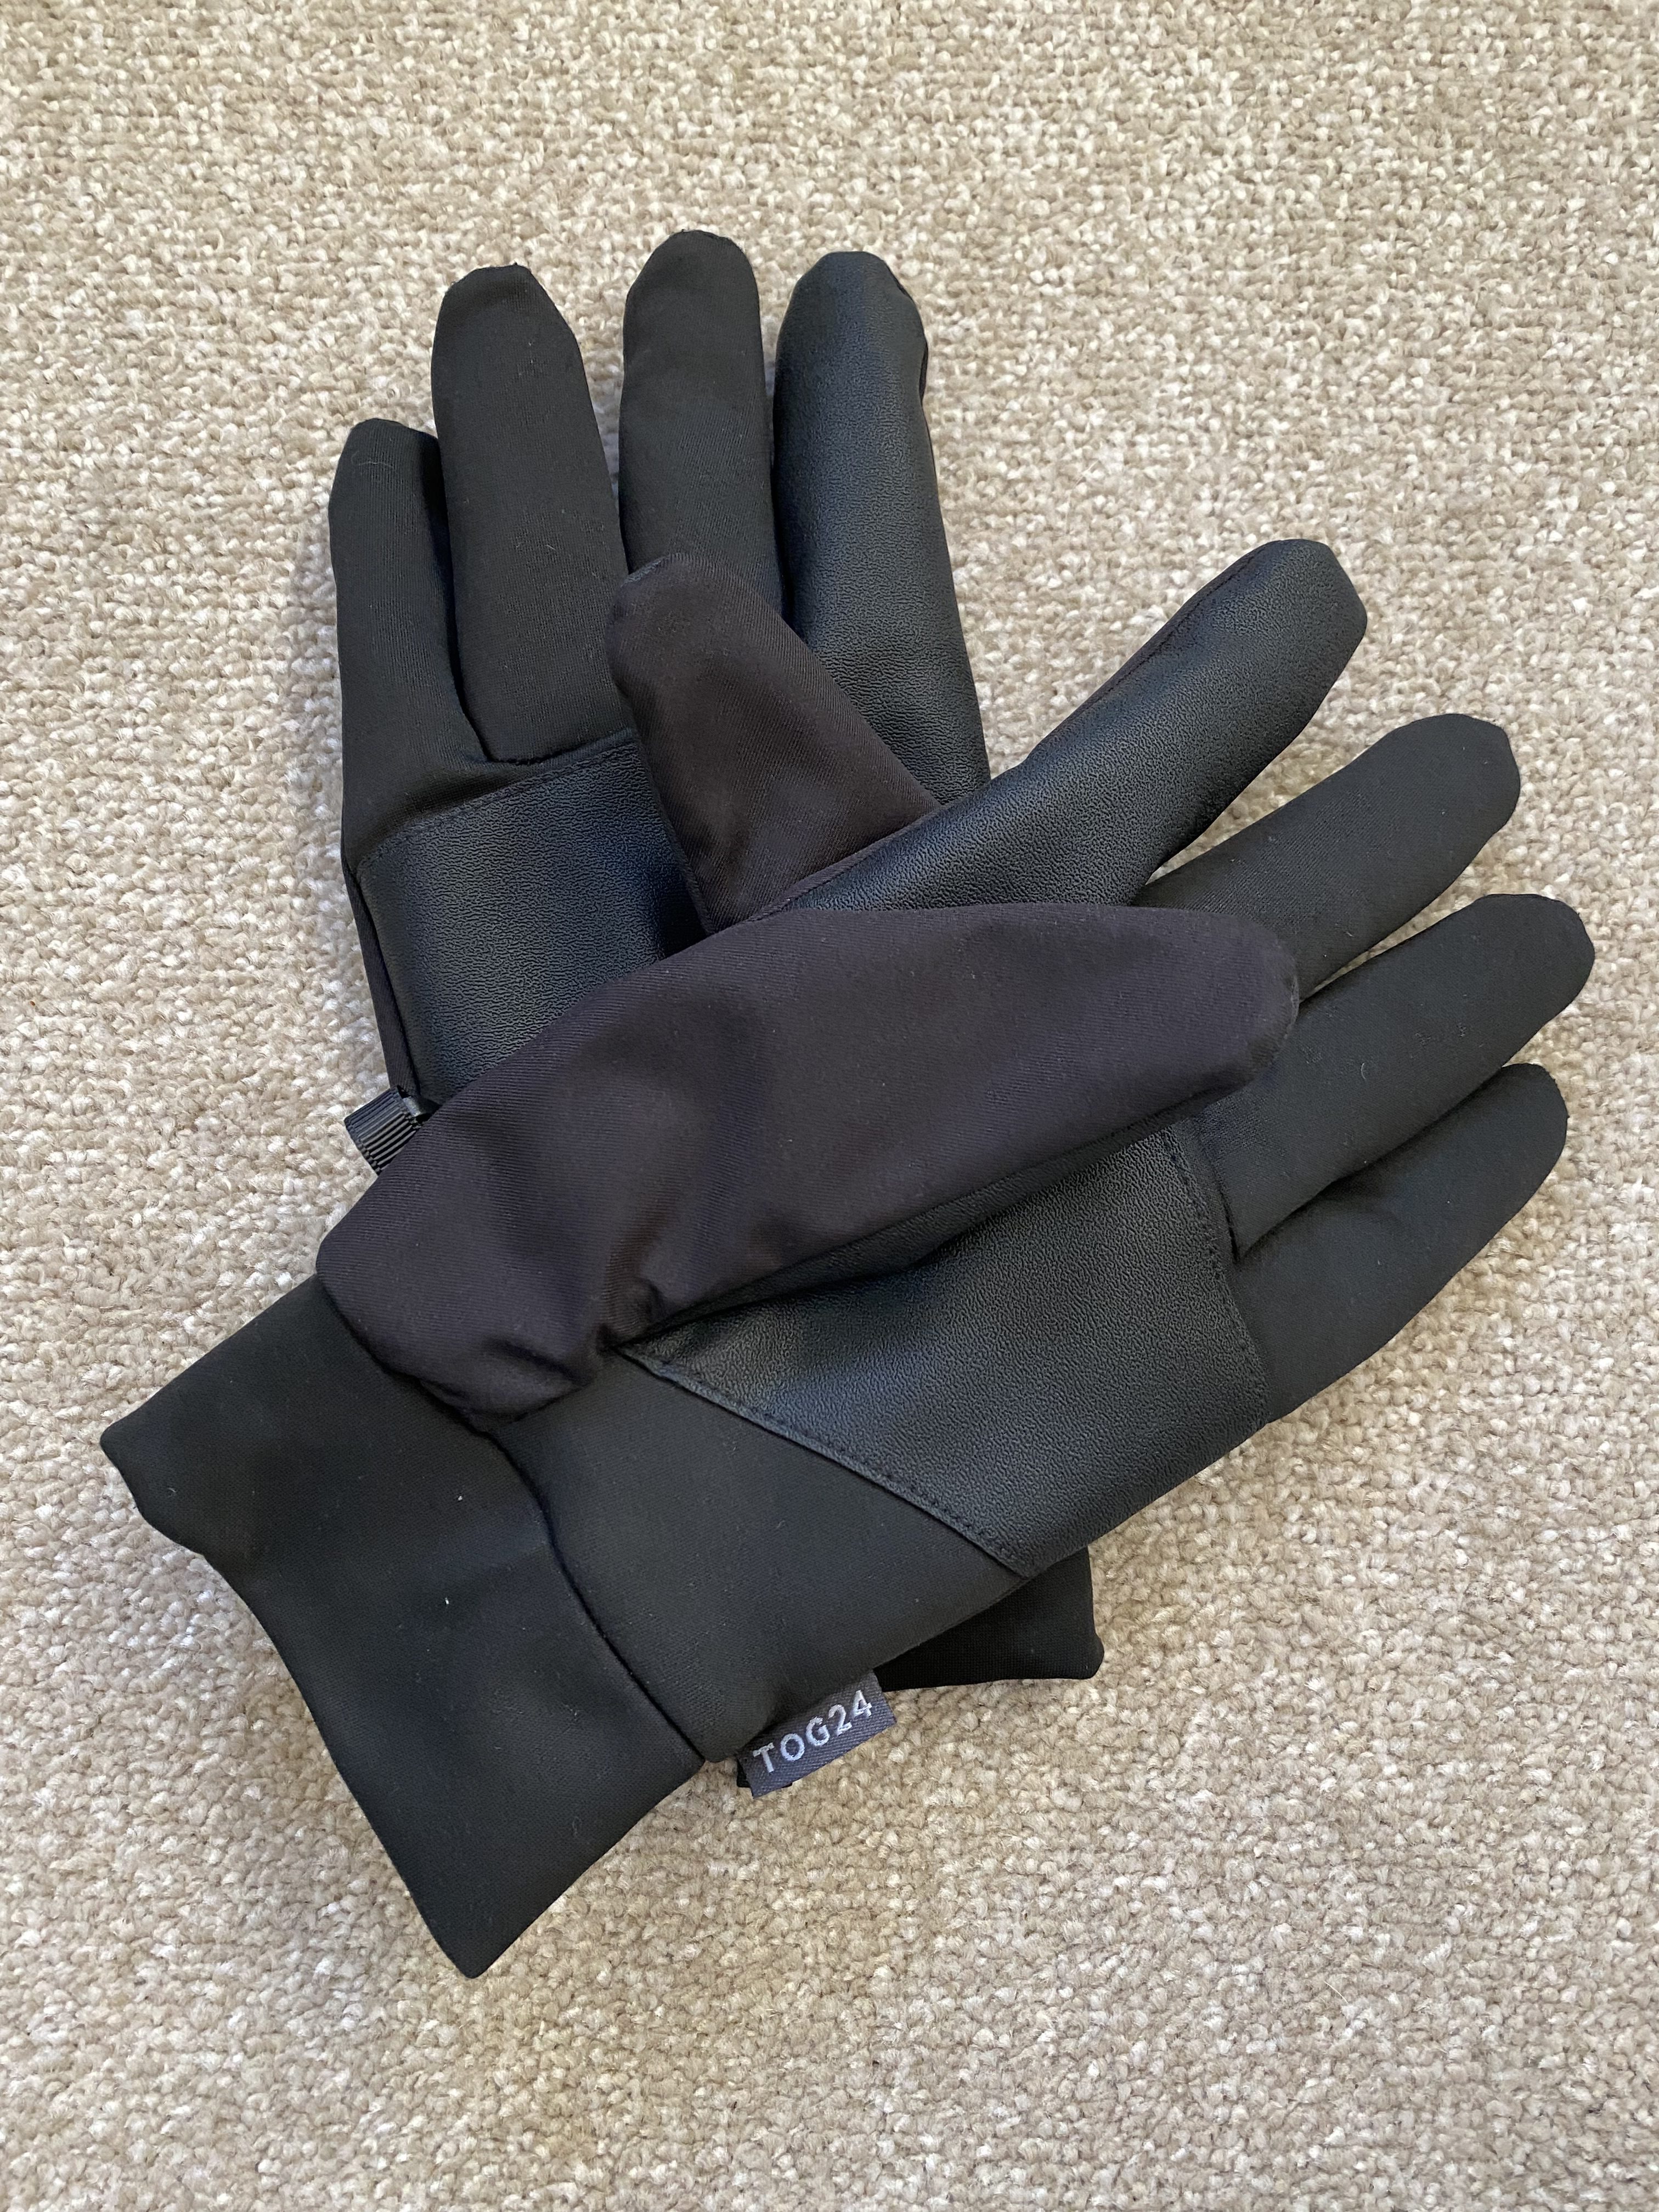 TOG24 Tornado Windproof Gloves